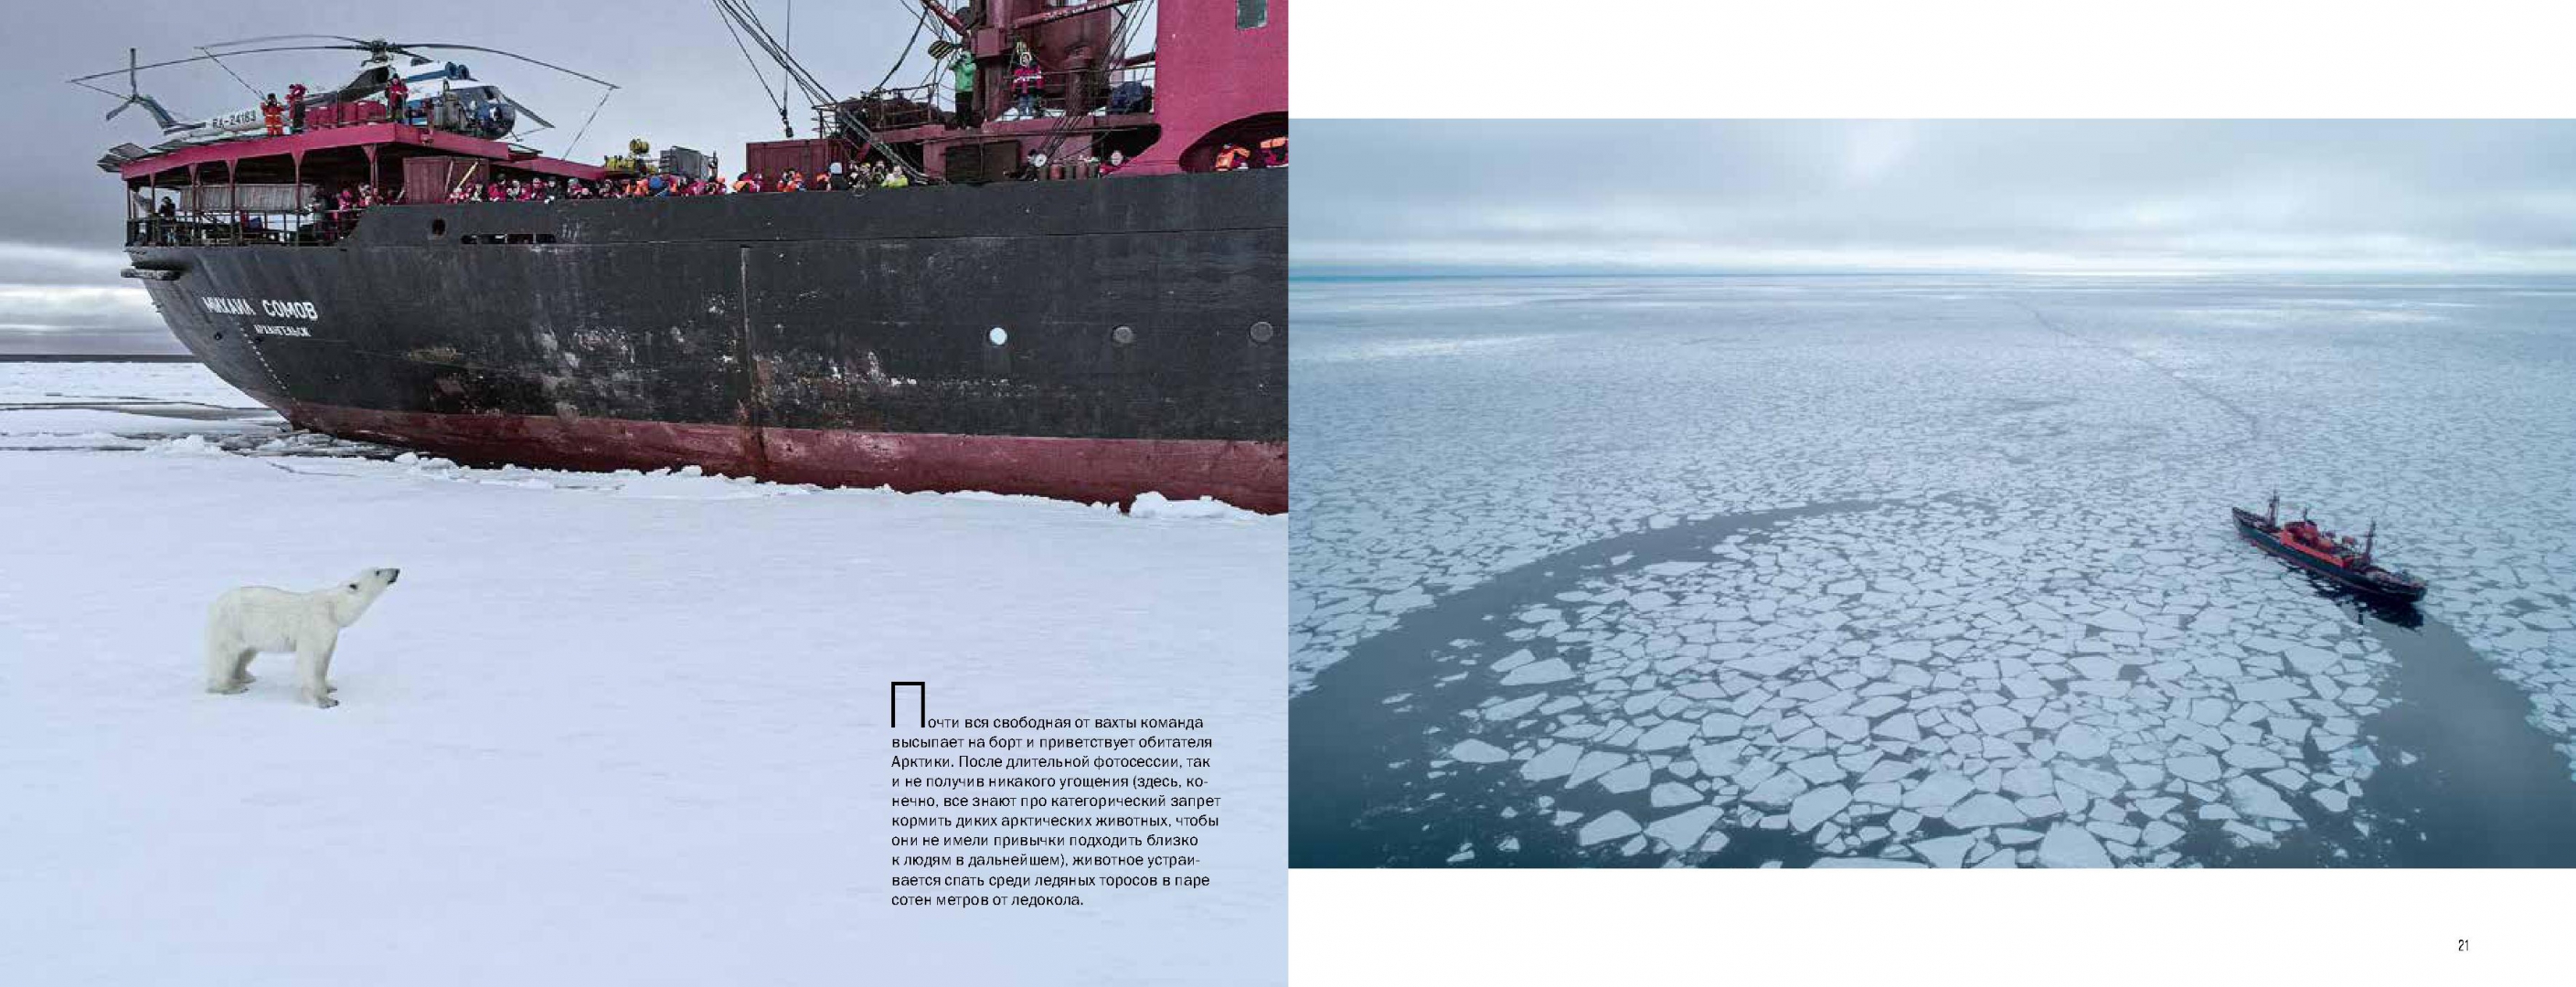 Экспедиция открытый океан архипелаги арктики 2019. Панорамы Арктики. Архипелаги Арктики панорама высоких широт.